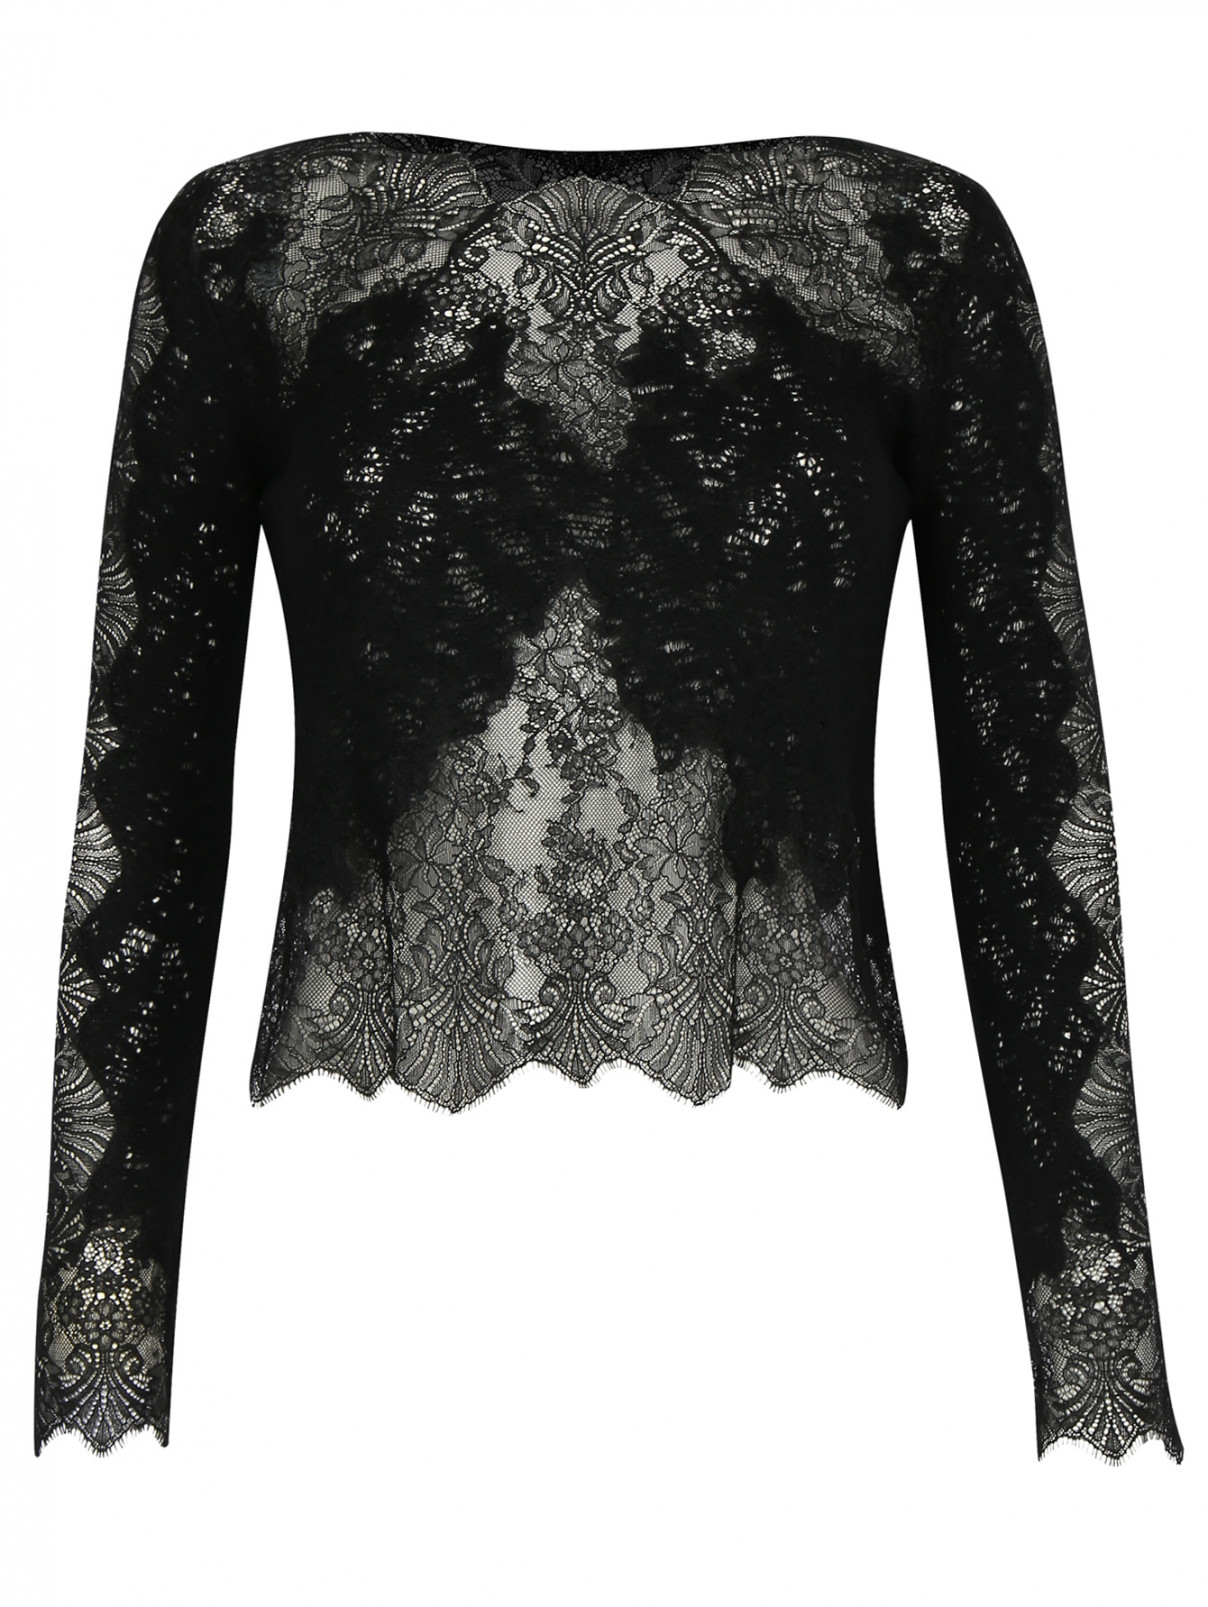 Блуза из шерсти и шелка с кружевной отделкой Ermanno Scervino  –  Общий вид  – Цвет:  Черный